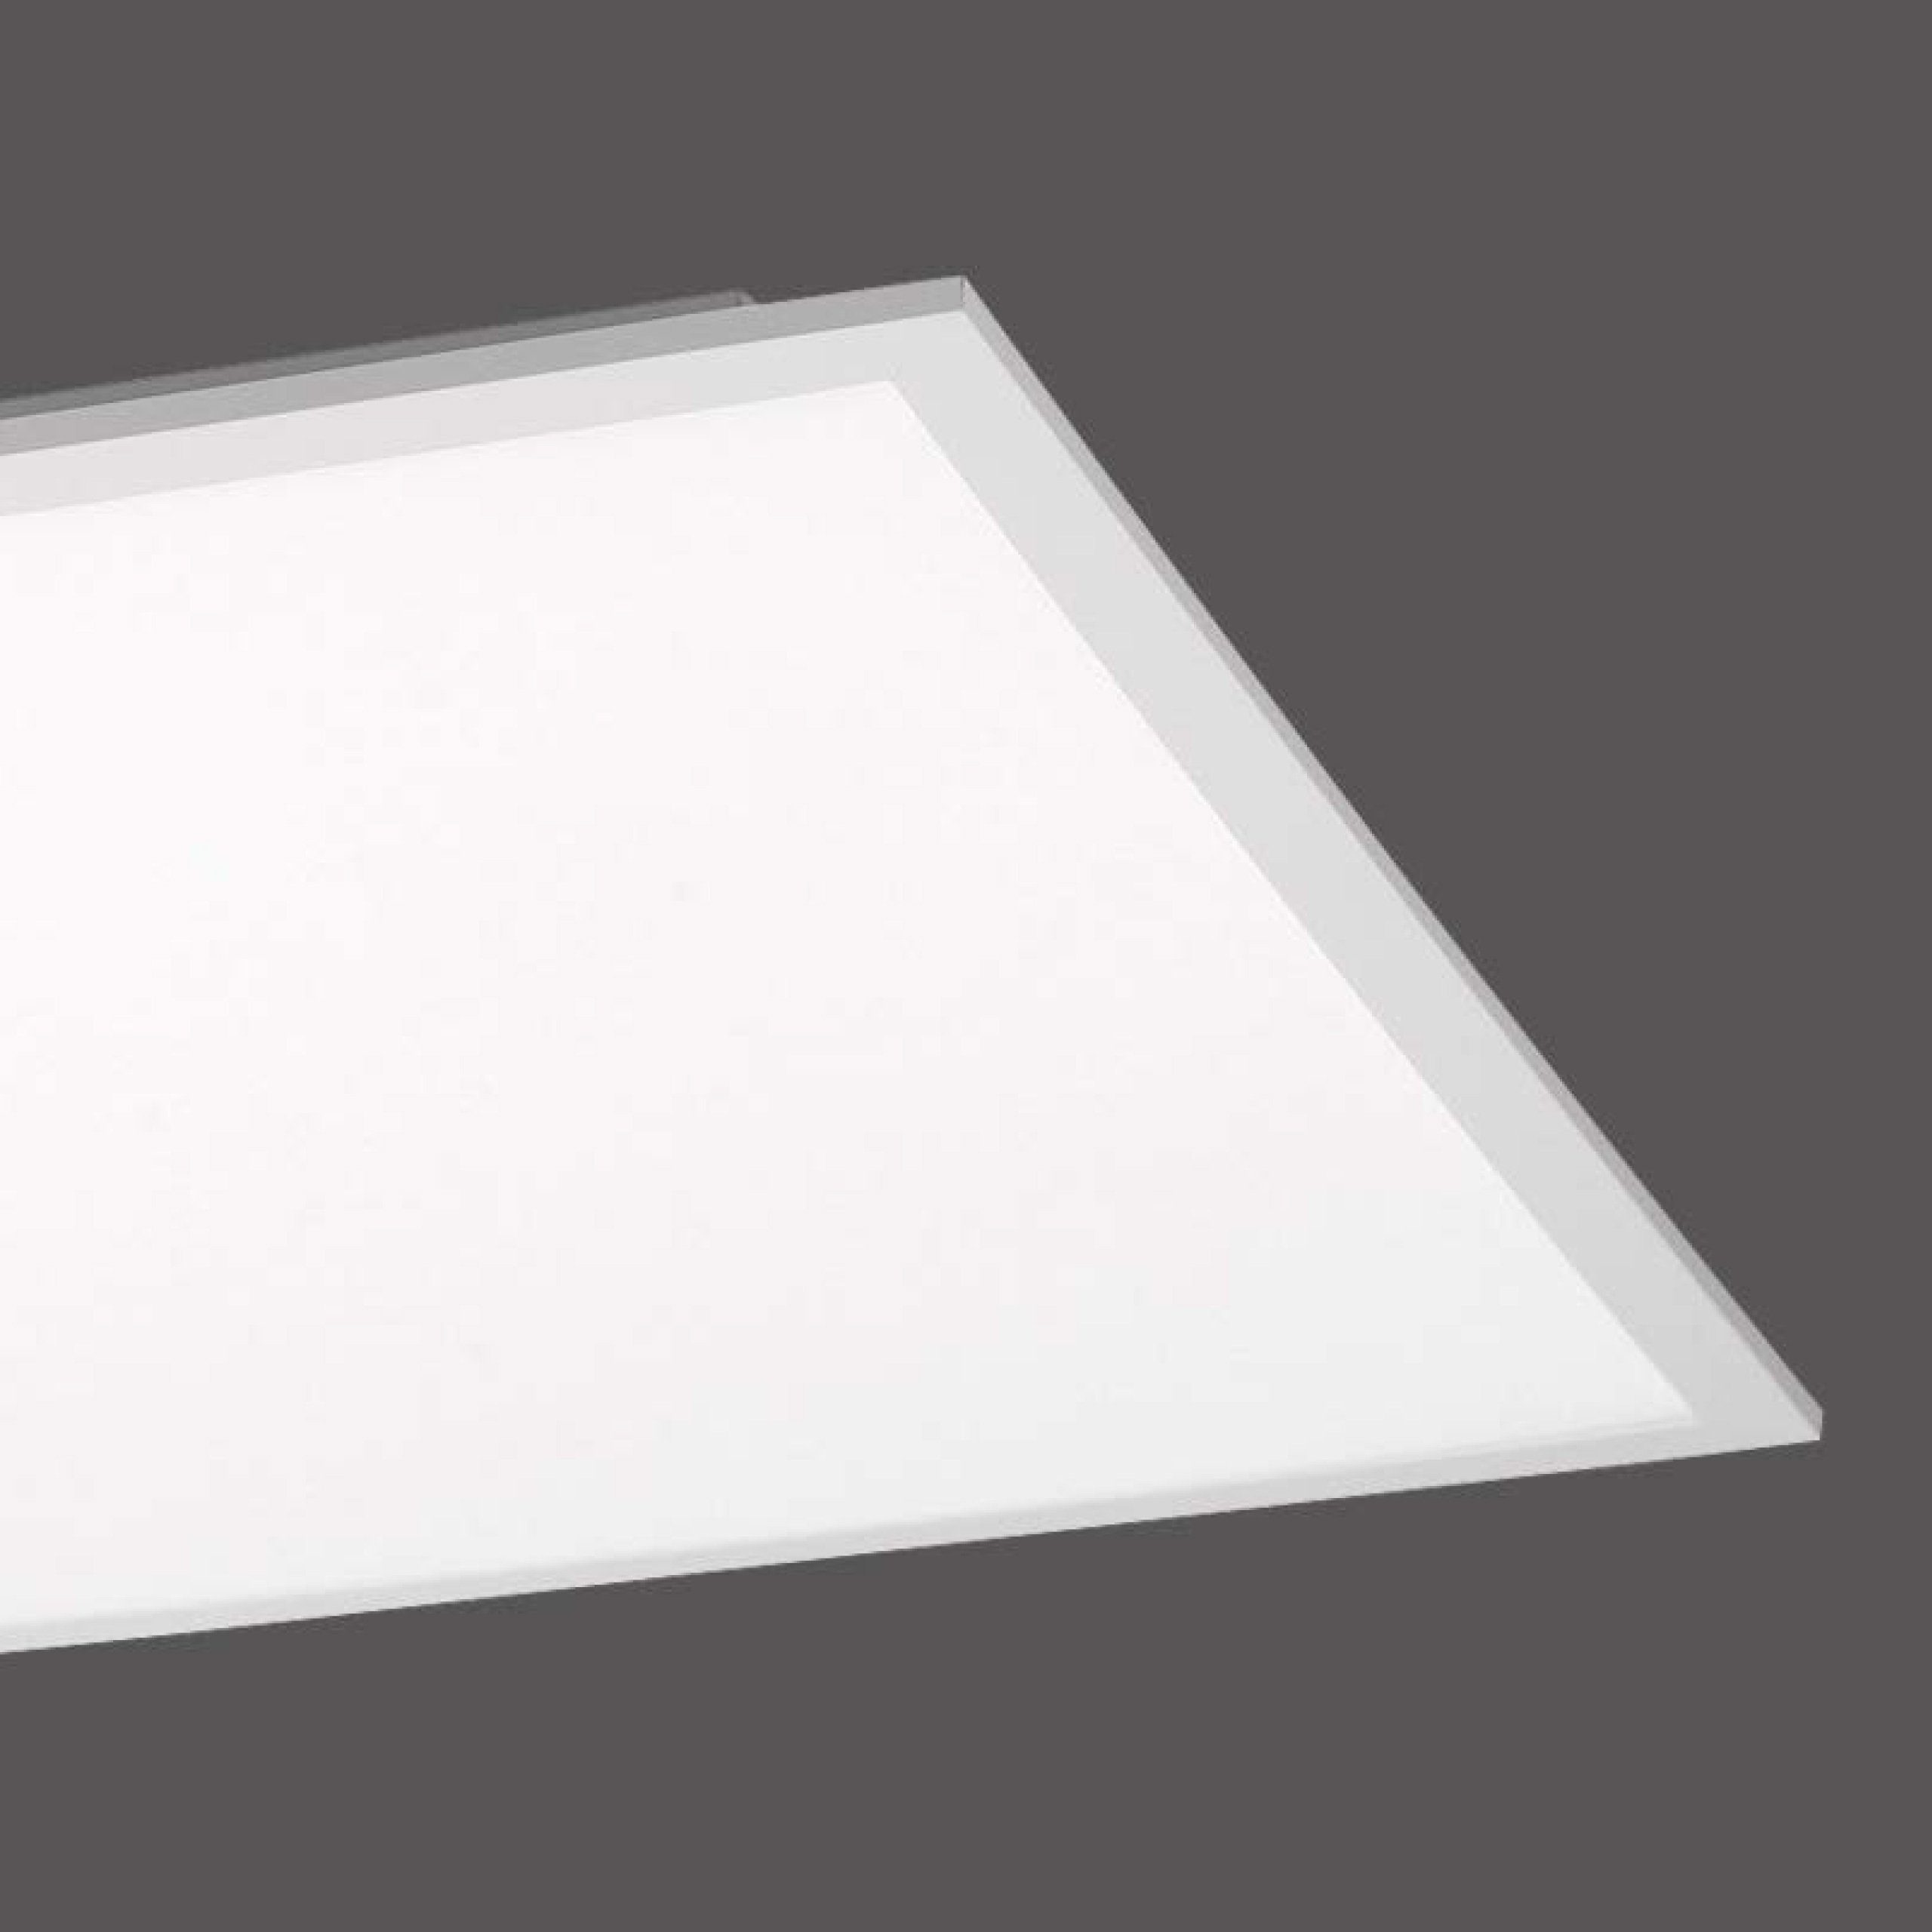 SellTec LED Deckenleuchte LED Panel Deckenlampe 45x45cm, Neutralweiß,  1xLED-Board / 23 Watt, neutralweiß, tageslichtweiß, Lichtfarbe  tageslichtweiß quadratisch, Büro